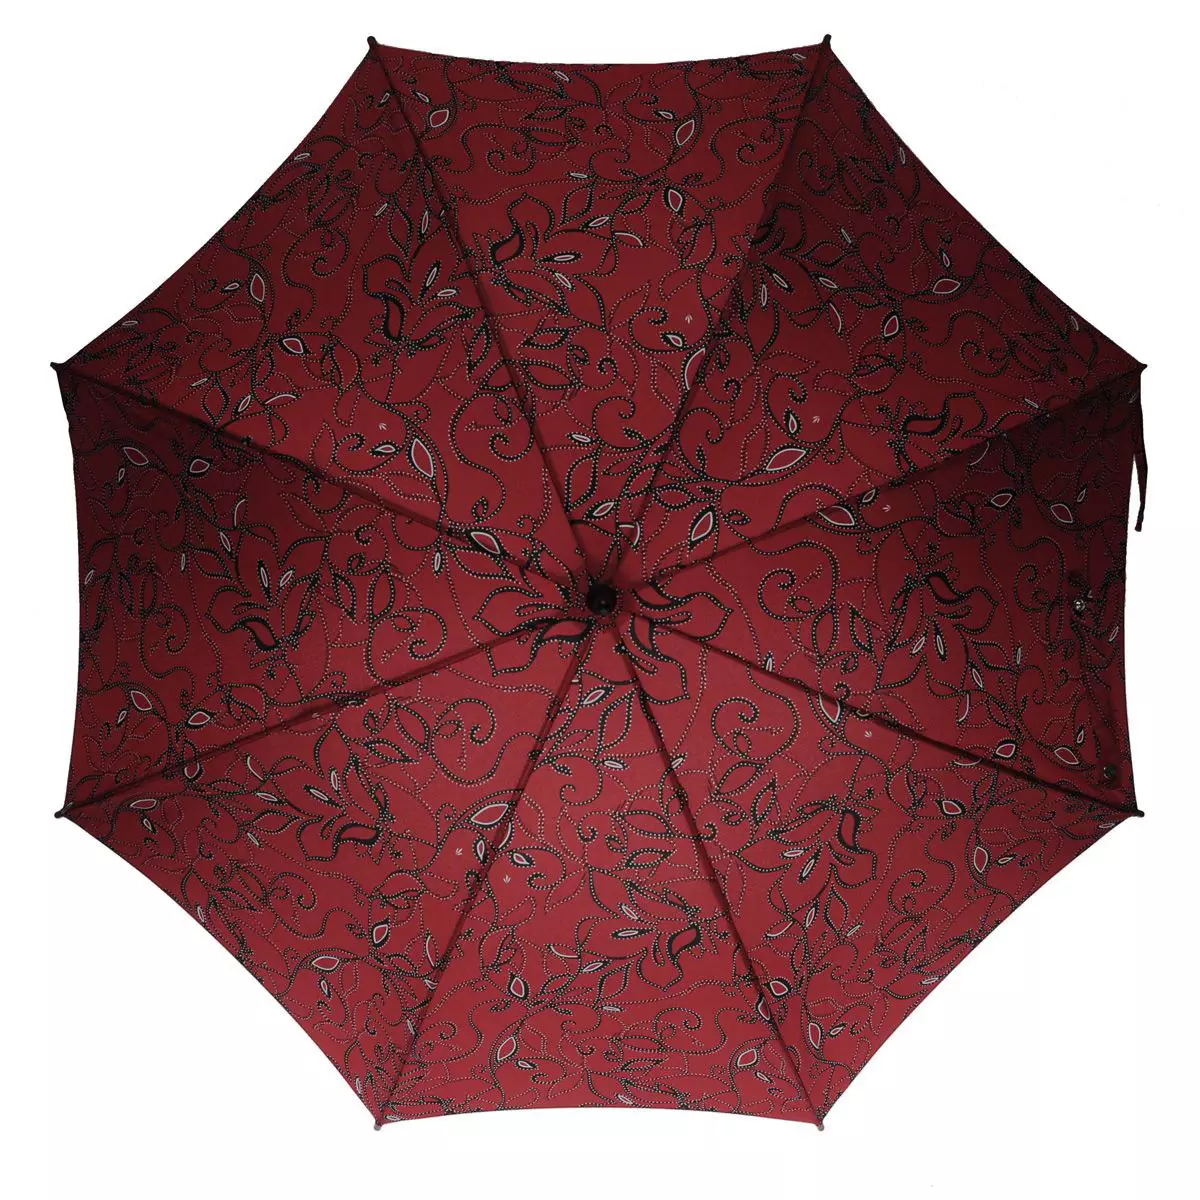 Fulton Guarda-chuvas (53 fotos): Características dos modelos e avaliações sobre guarda-chuvas 15229_40